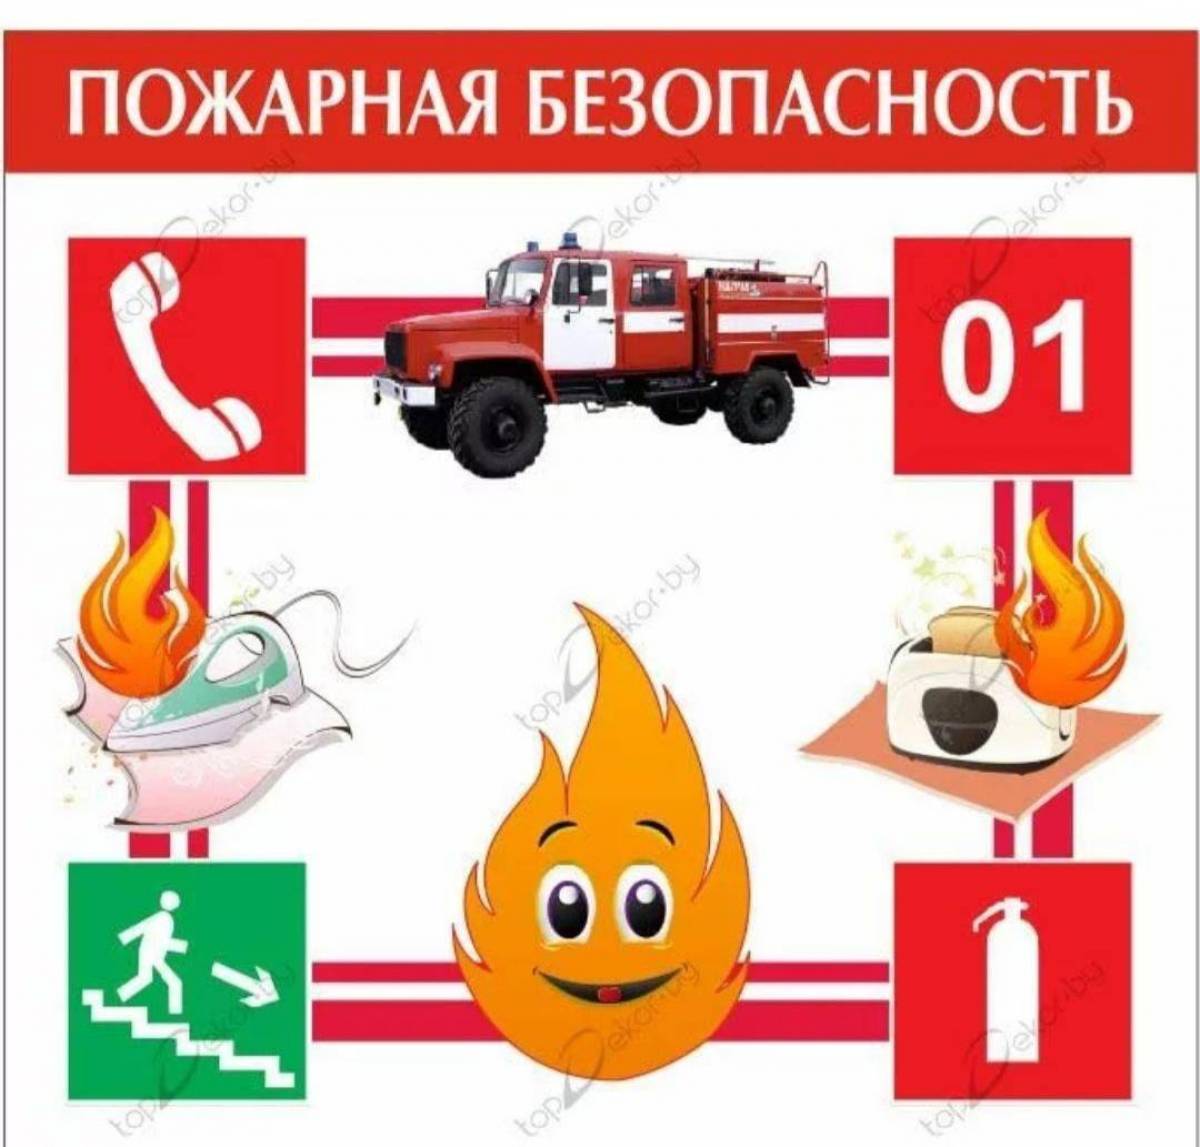 Пожарная безопасность для детей в детском саду #34